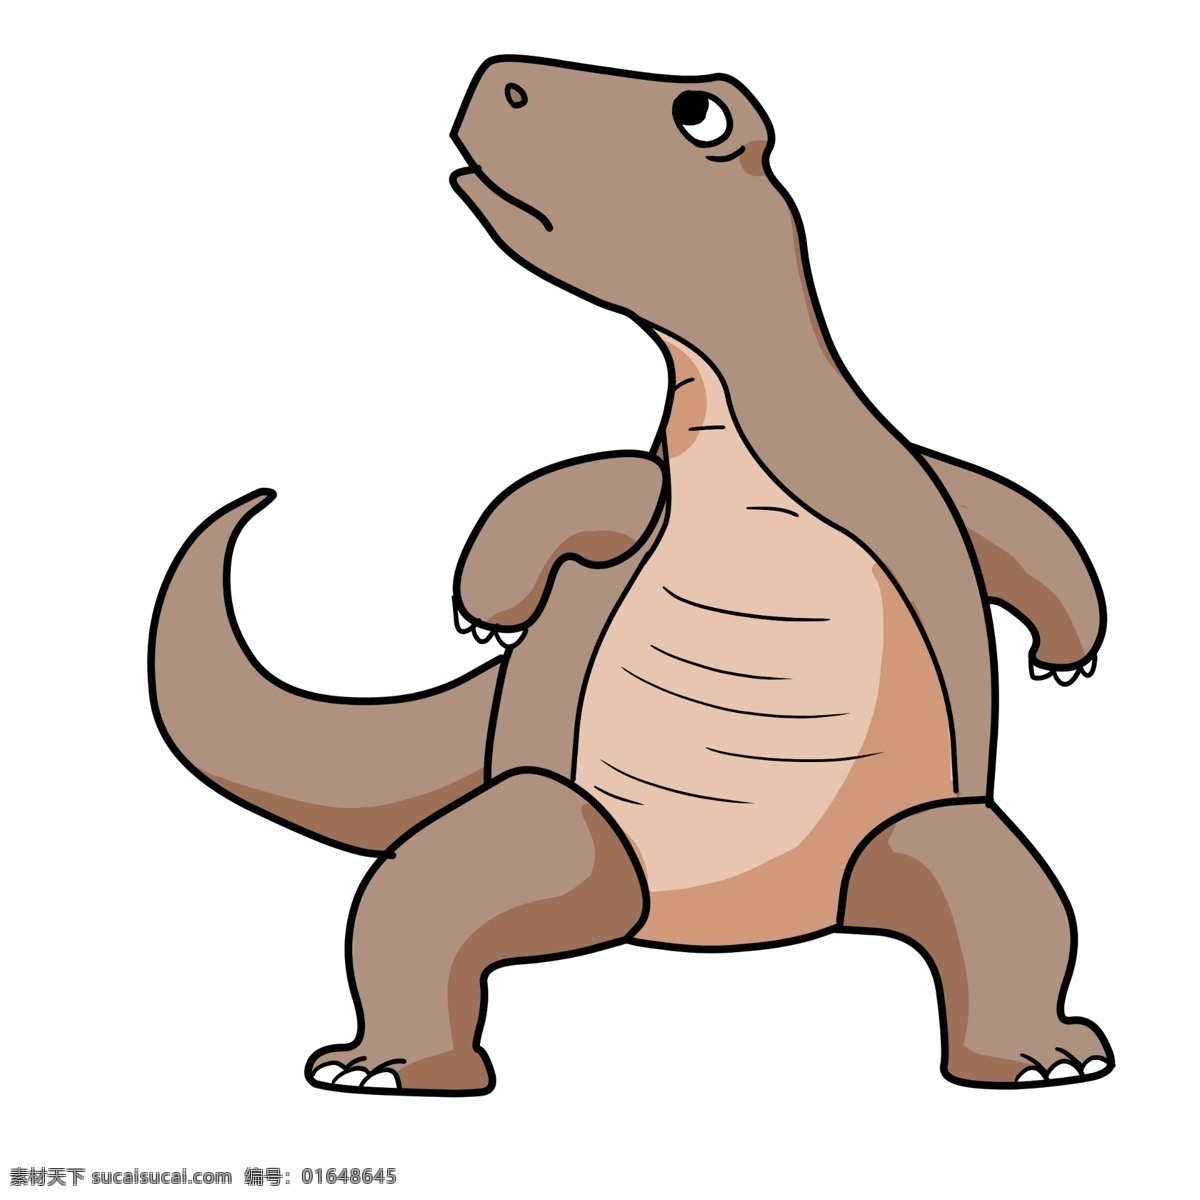 卡通 可爱 弯 龙 插画 可爱的恐龙 卡通弯龙 咖色的恐龙 灭绝动物 小动物 尖尾巴 恐龙动物插画